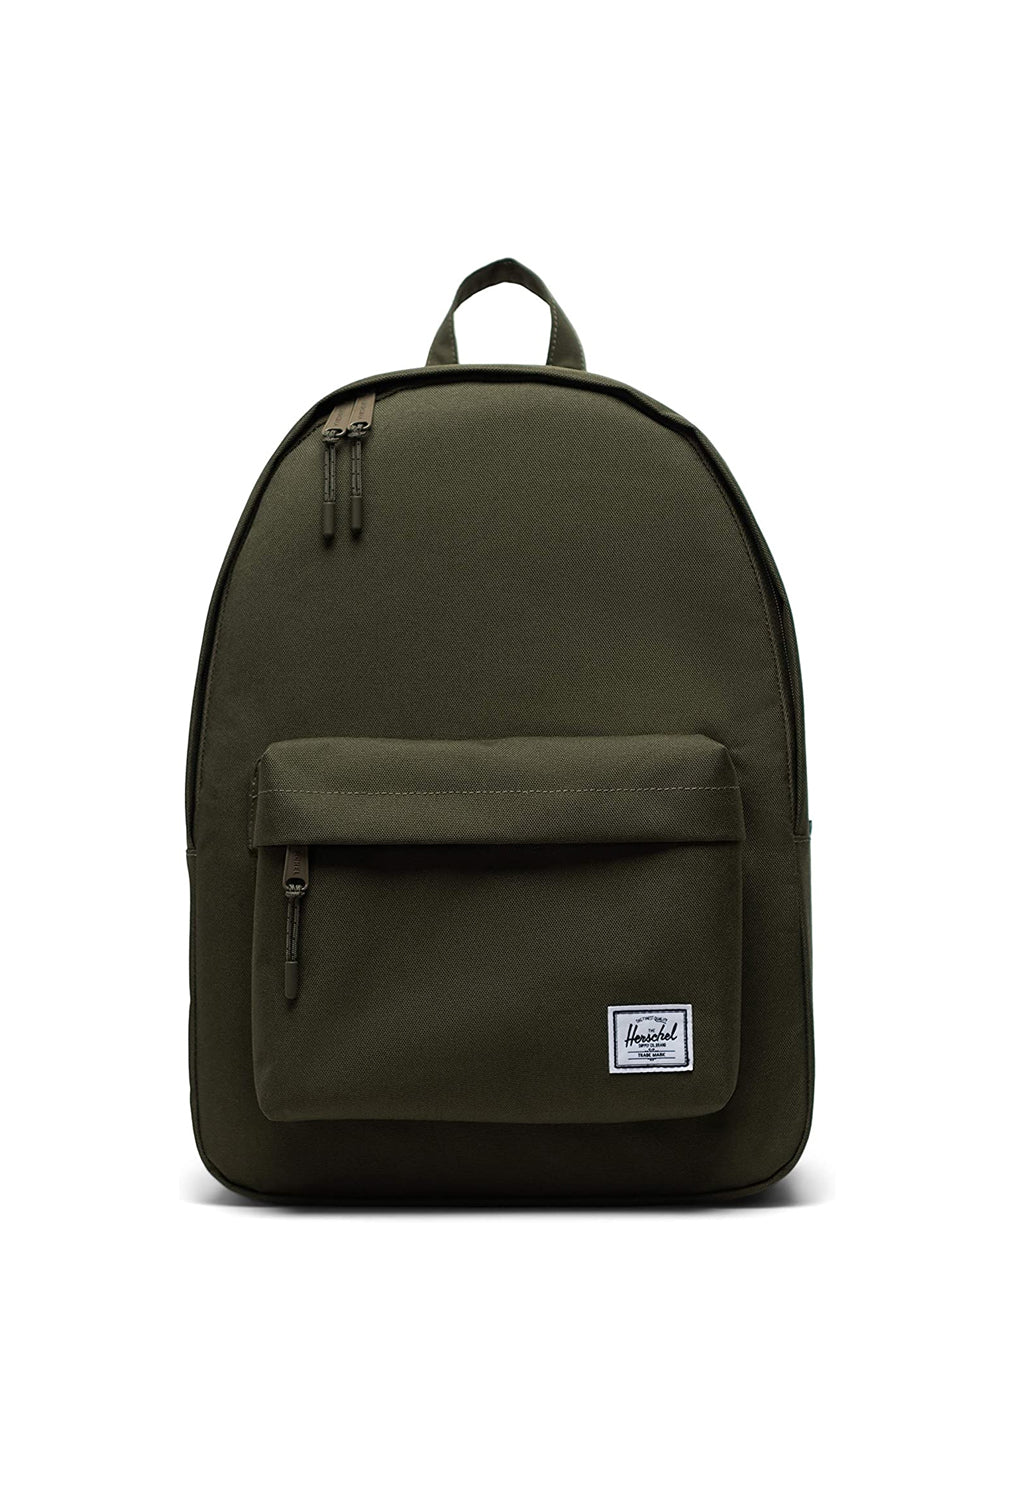 Herschel Classic Ivy Green Backpack